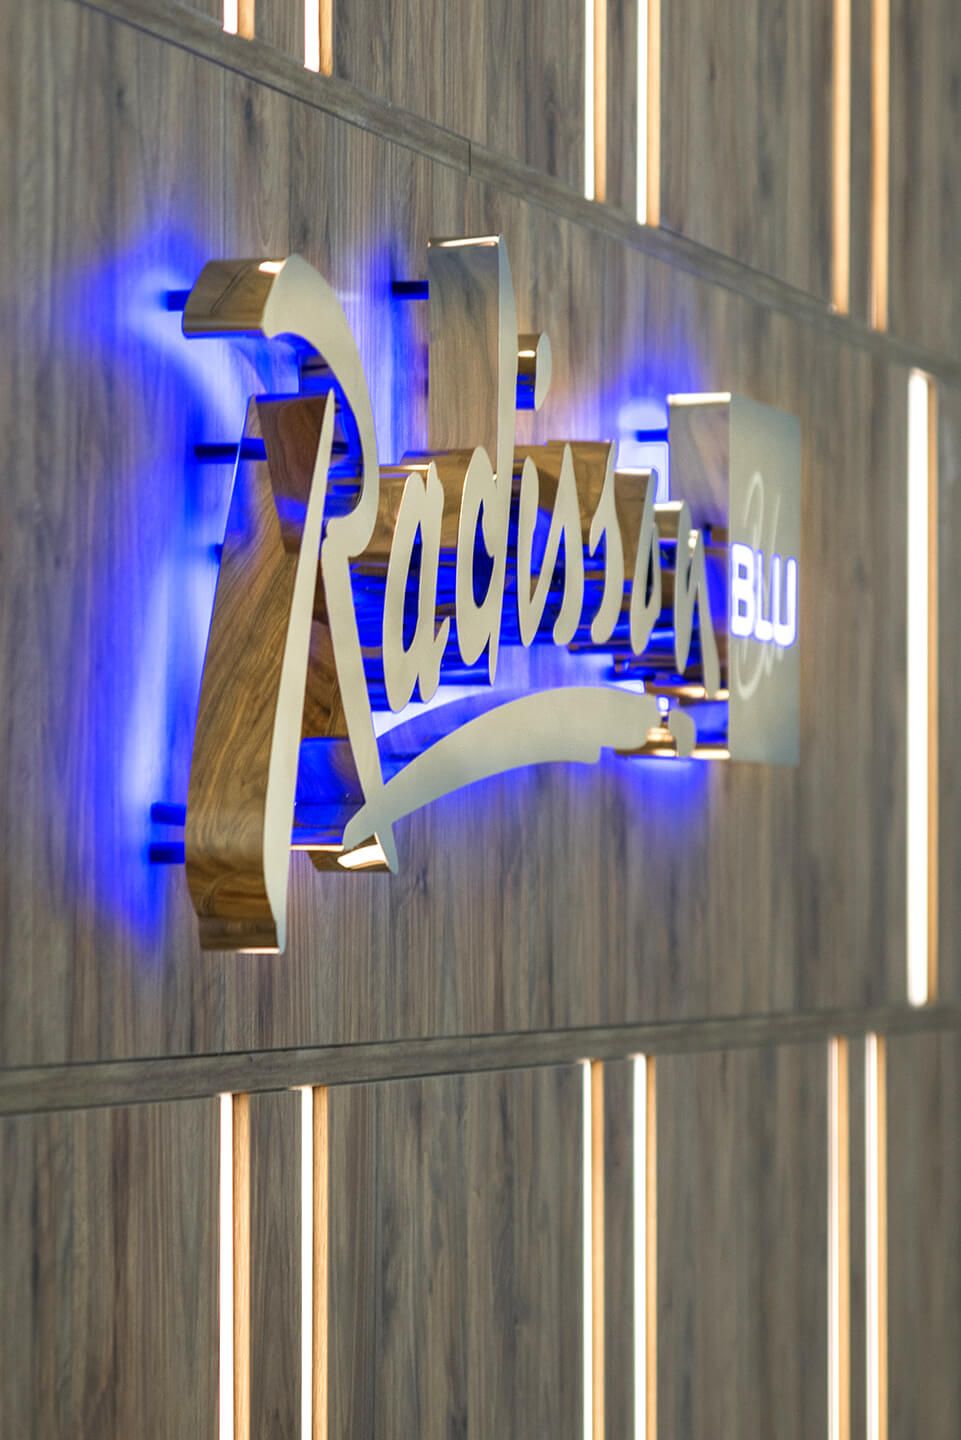 radisson sopot blu hotel - radisson-blauwe-letters-van-zilver-plaat-gouden-letters-behind-receptie-in-hotel-op-een-houten-muur-licht-van-behind-blauw-sopot-logo-company-exclusief-glamour